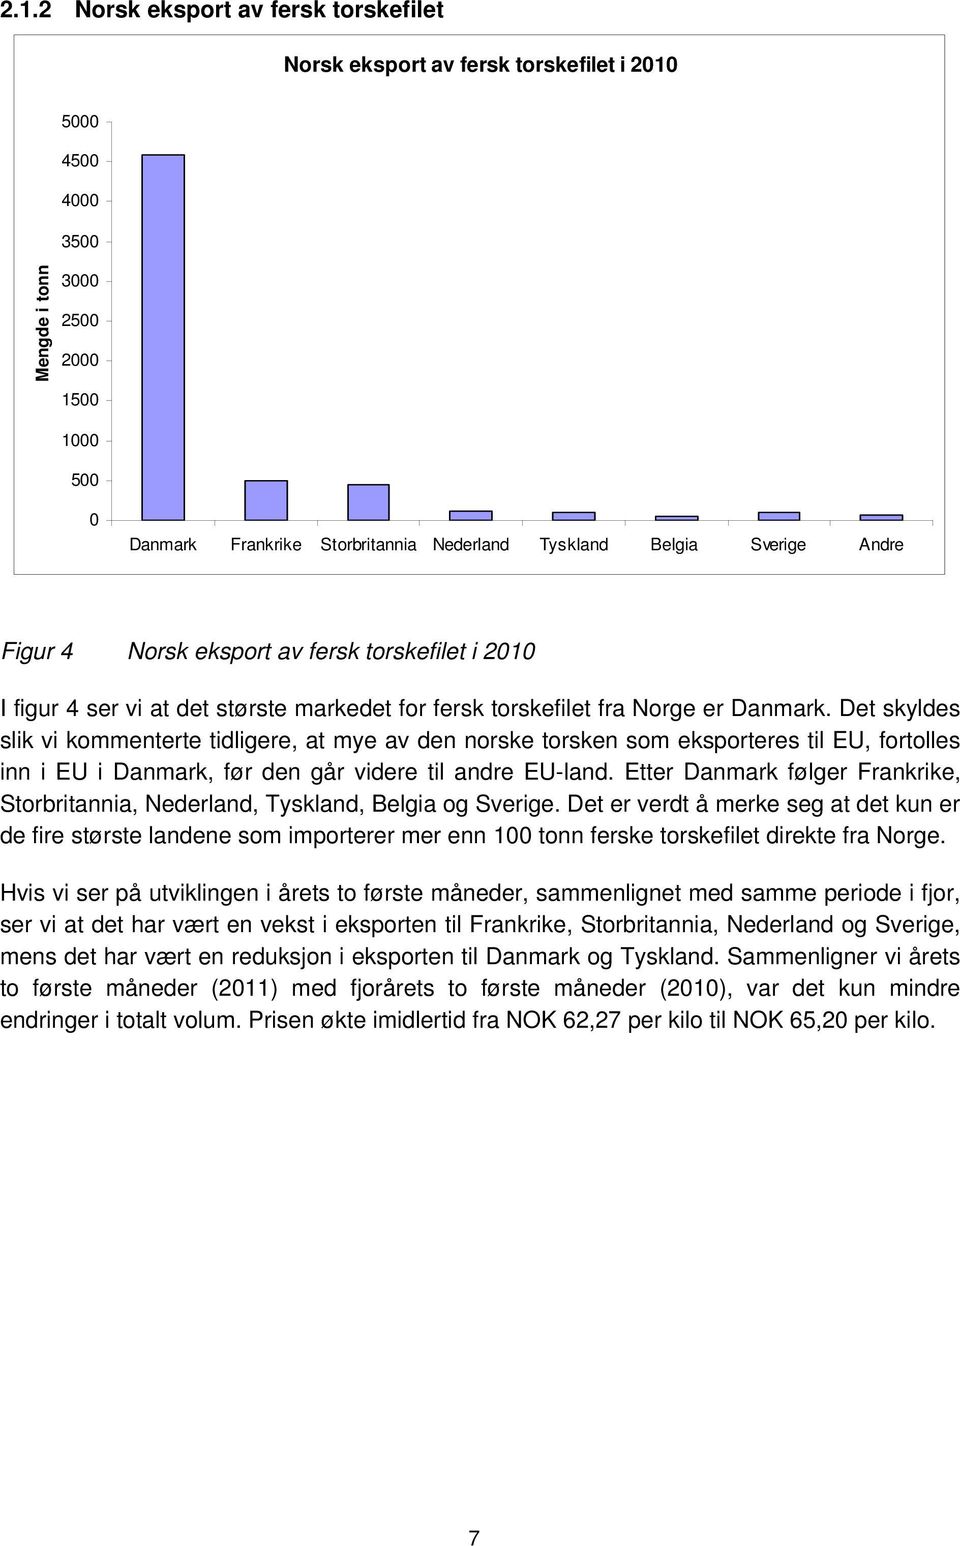 Det skyldes slik vi kommenterte tidligere, at mye av den norske torsken som eksporteres til EU, fortolles inn i EU i Danmark, før den går videre til andre EU-land.